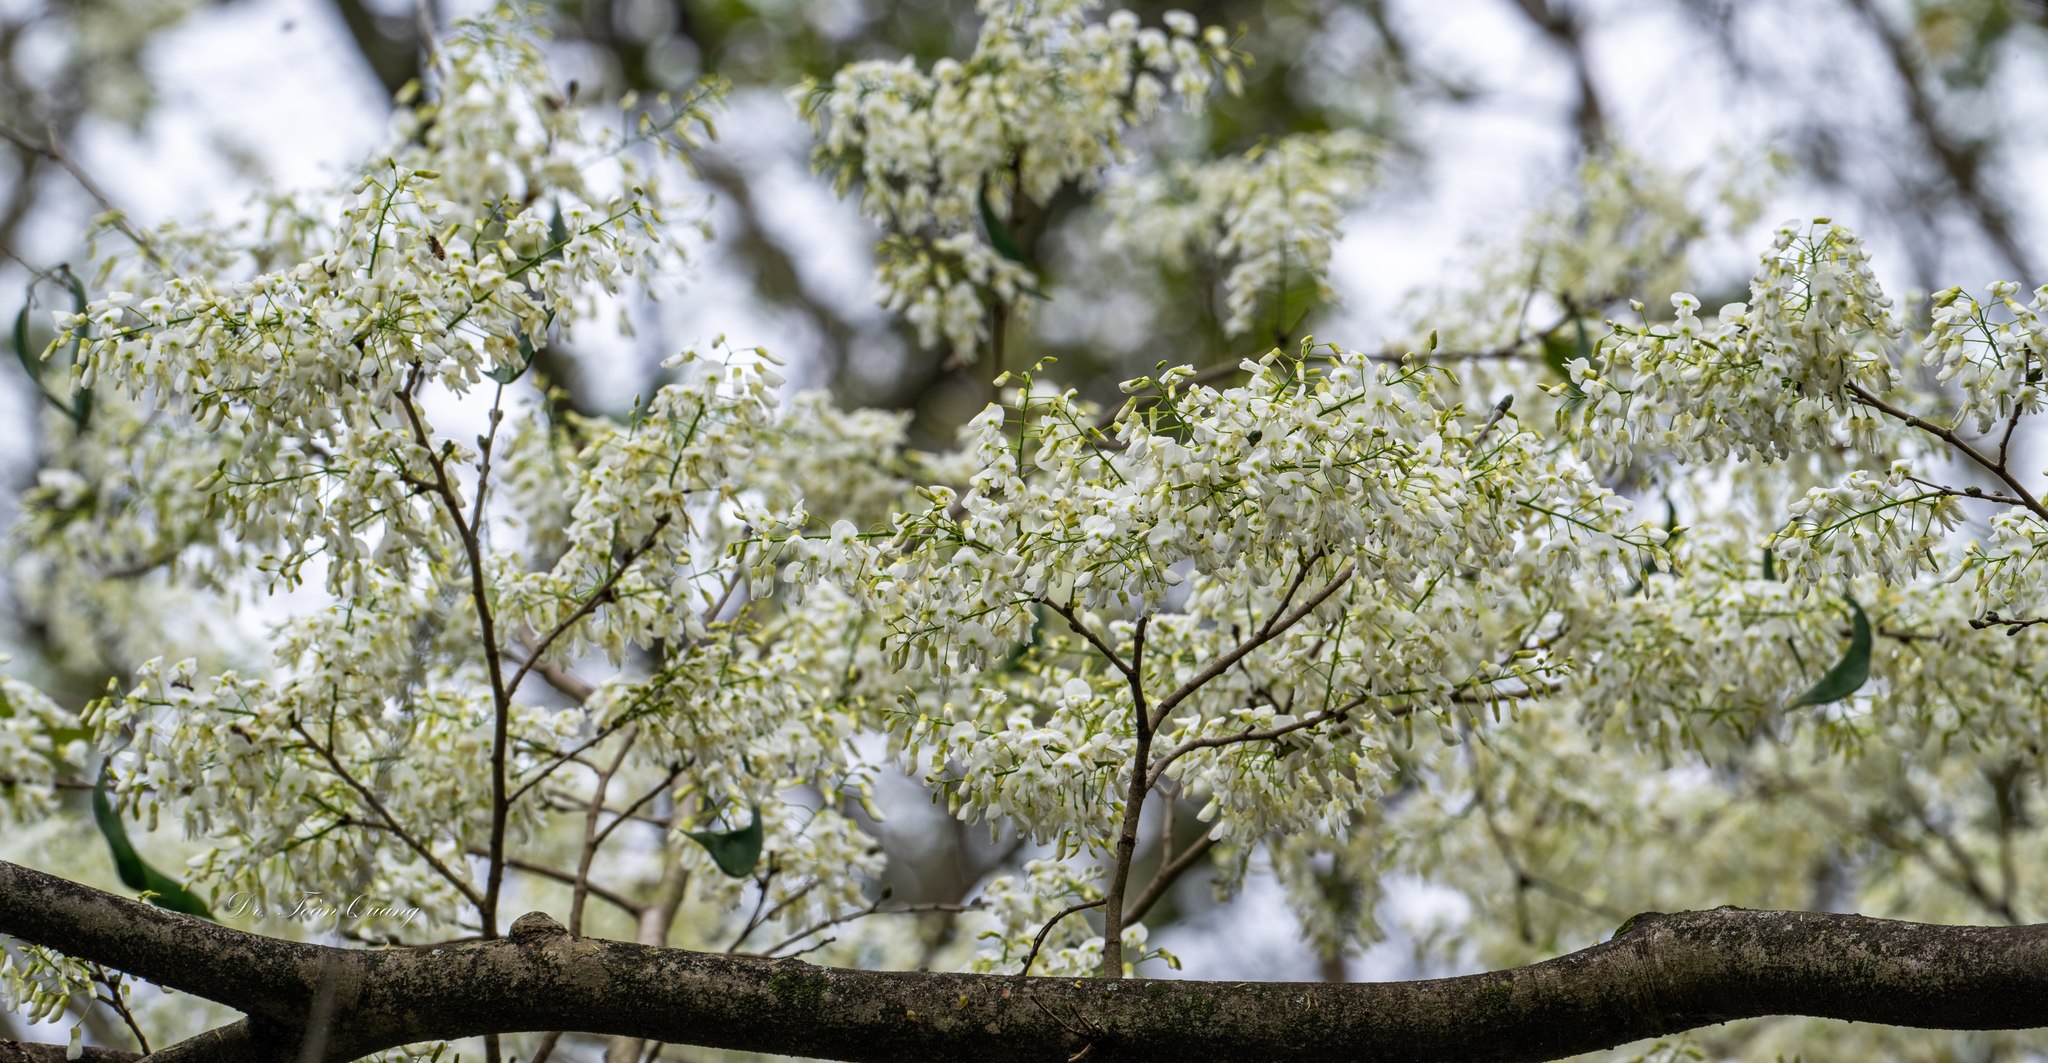 Thời điểm ngắm hoa sưa đẹp nhất là khi cây chưa ra lá non, cả một màu trắng muốt bao trọn những cành gỗ nâu xám khẳng khiu. Ảnh: Toàn Quang  